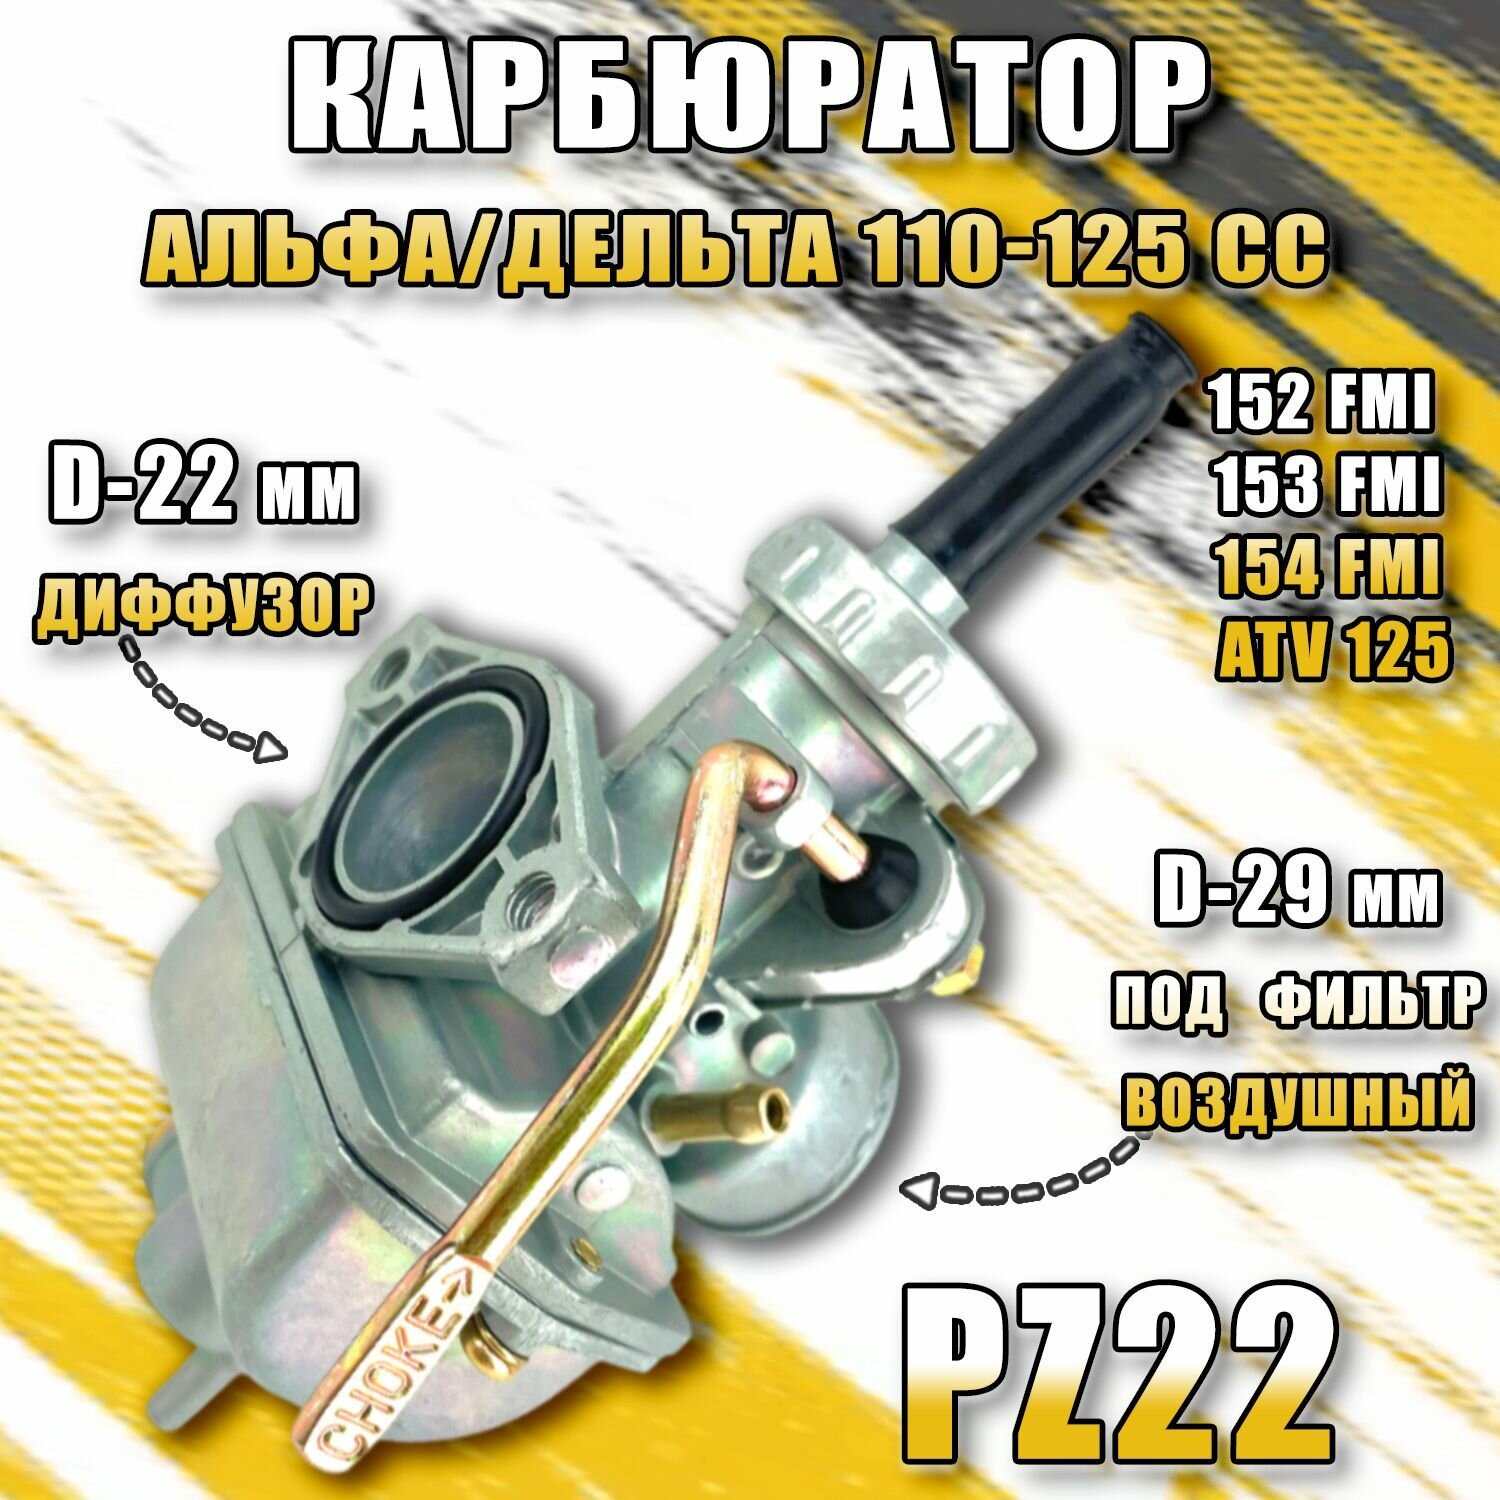 Карбюратор Альфа/Дельта 110-125 cc (PZ22)